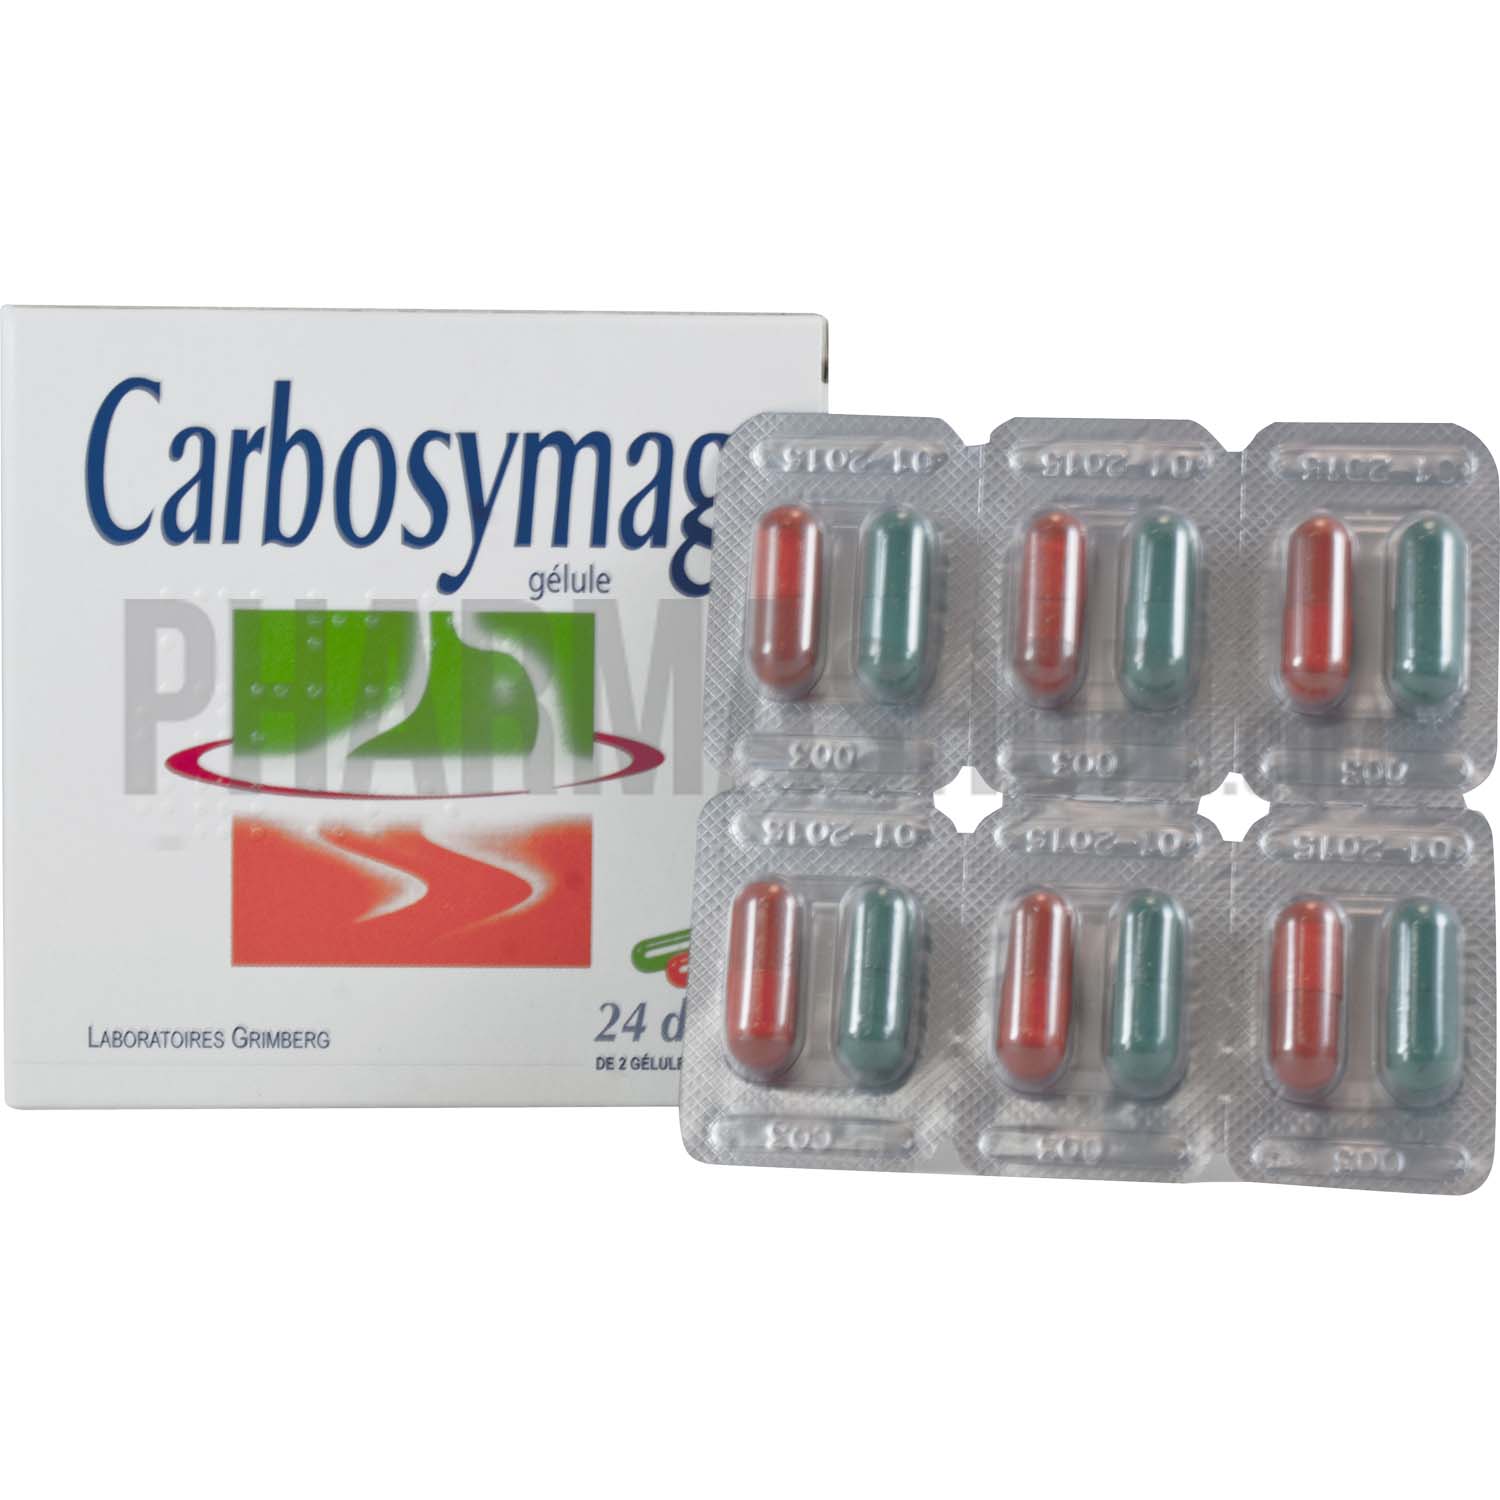 Carbosymag gélule, 1 boîtes de 48 doses - 96 gélules